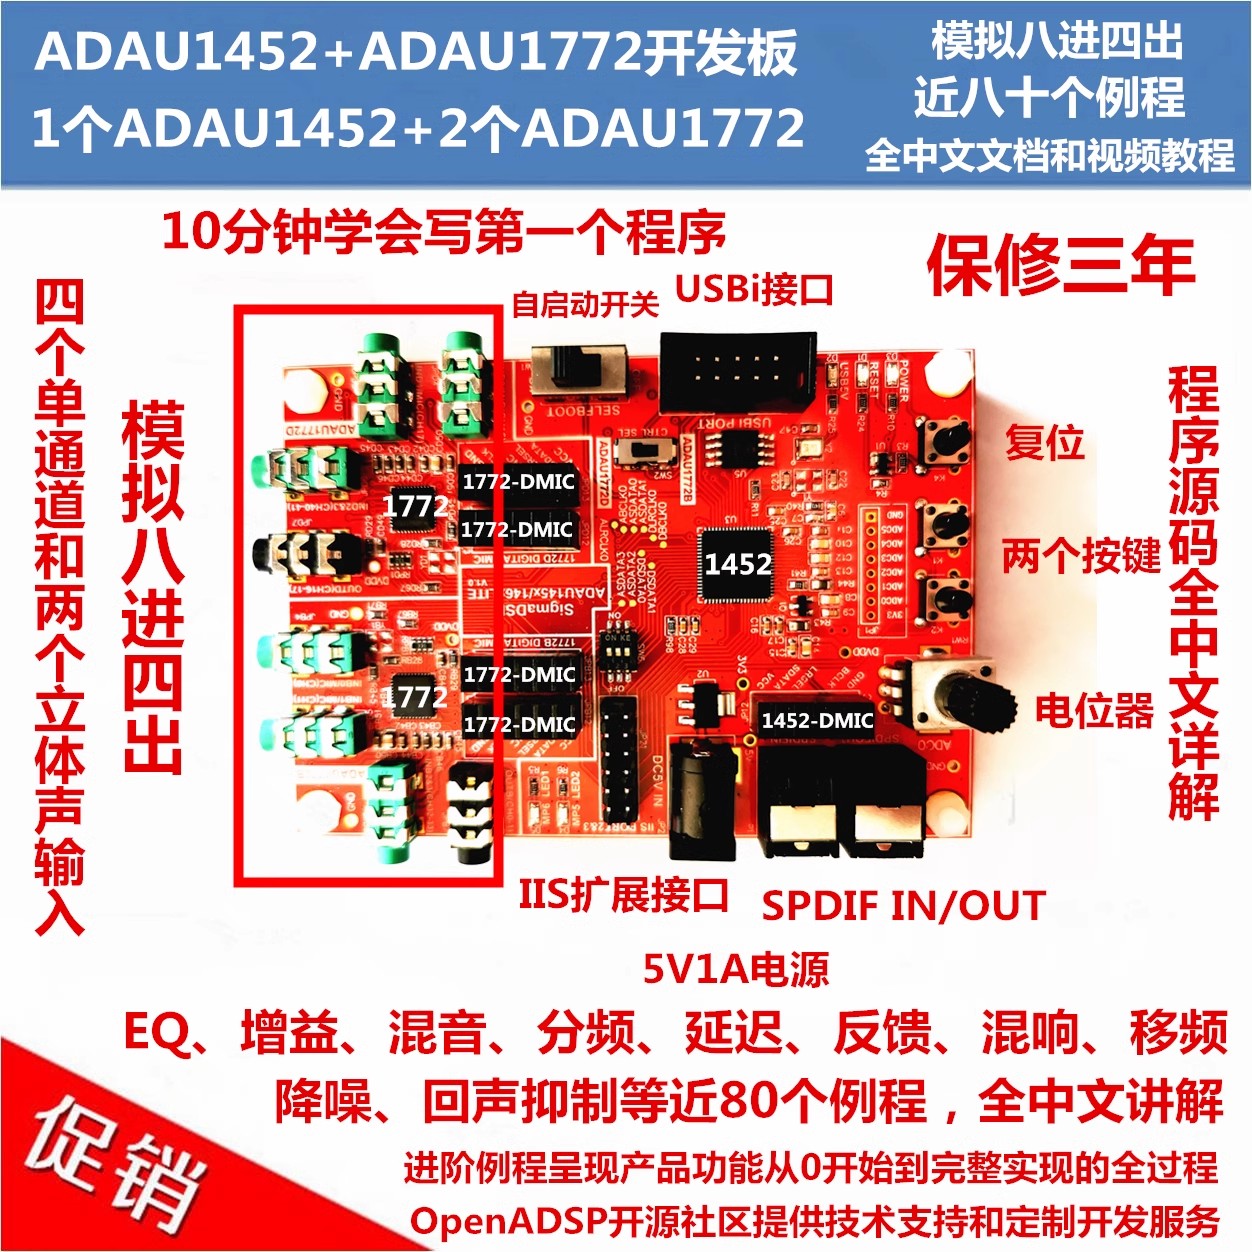 ADAU1452开发板/八进四出/2颗ADAU1772作为Codec/多SigmaDSP设计